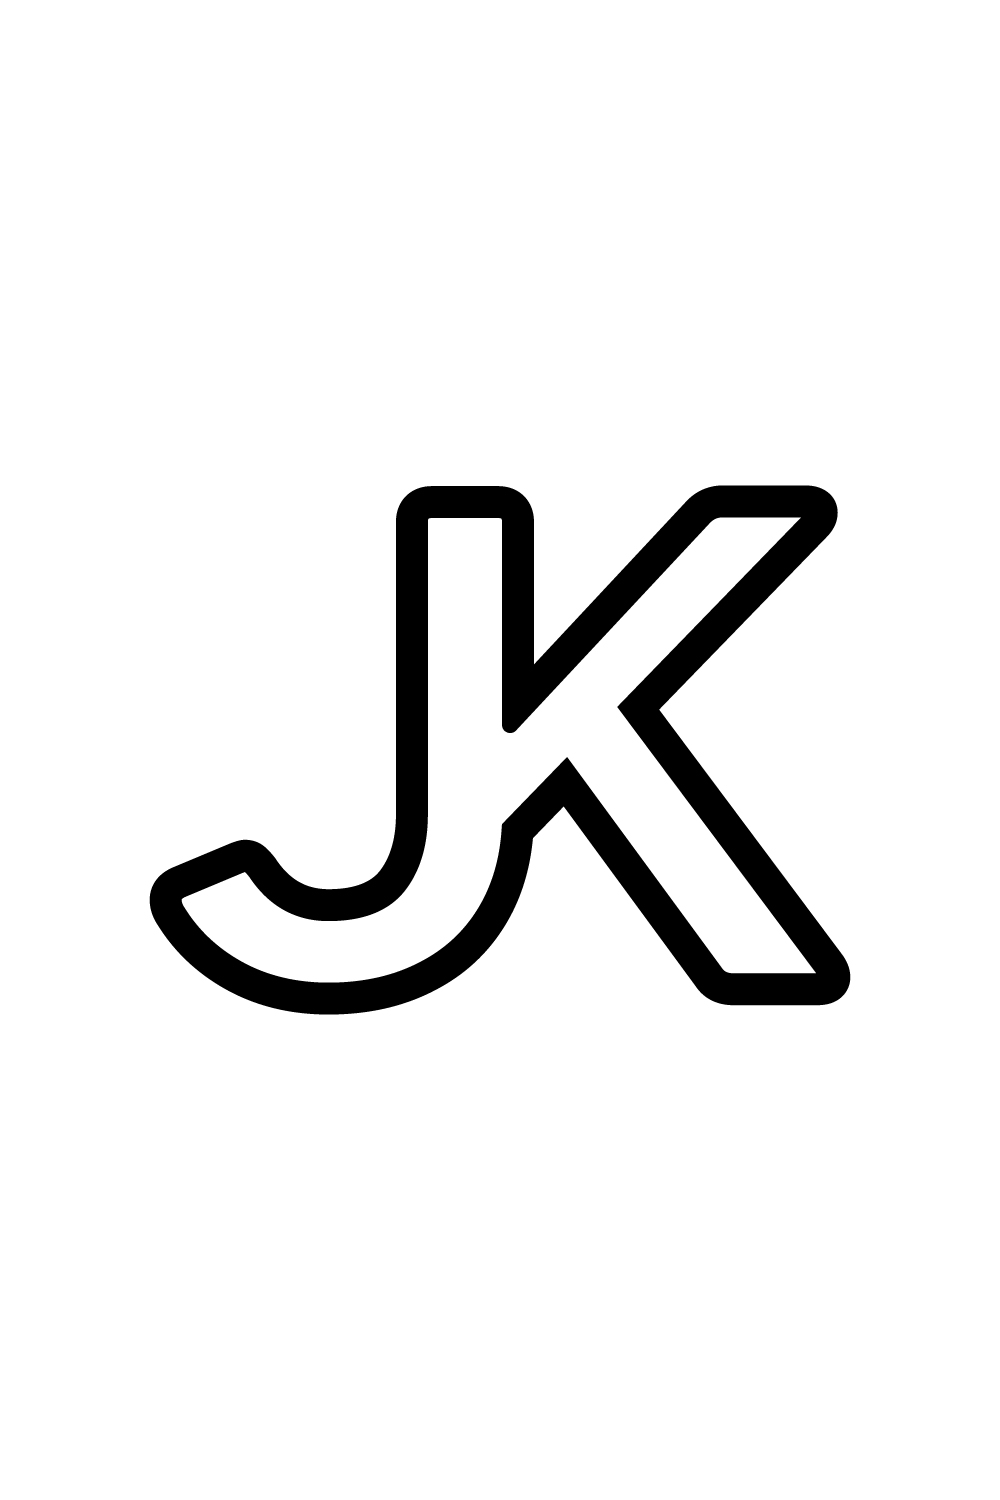 JK logo design pinterest preview image.